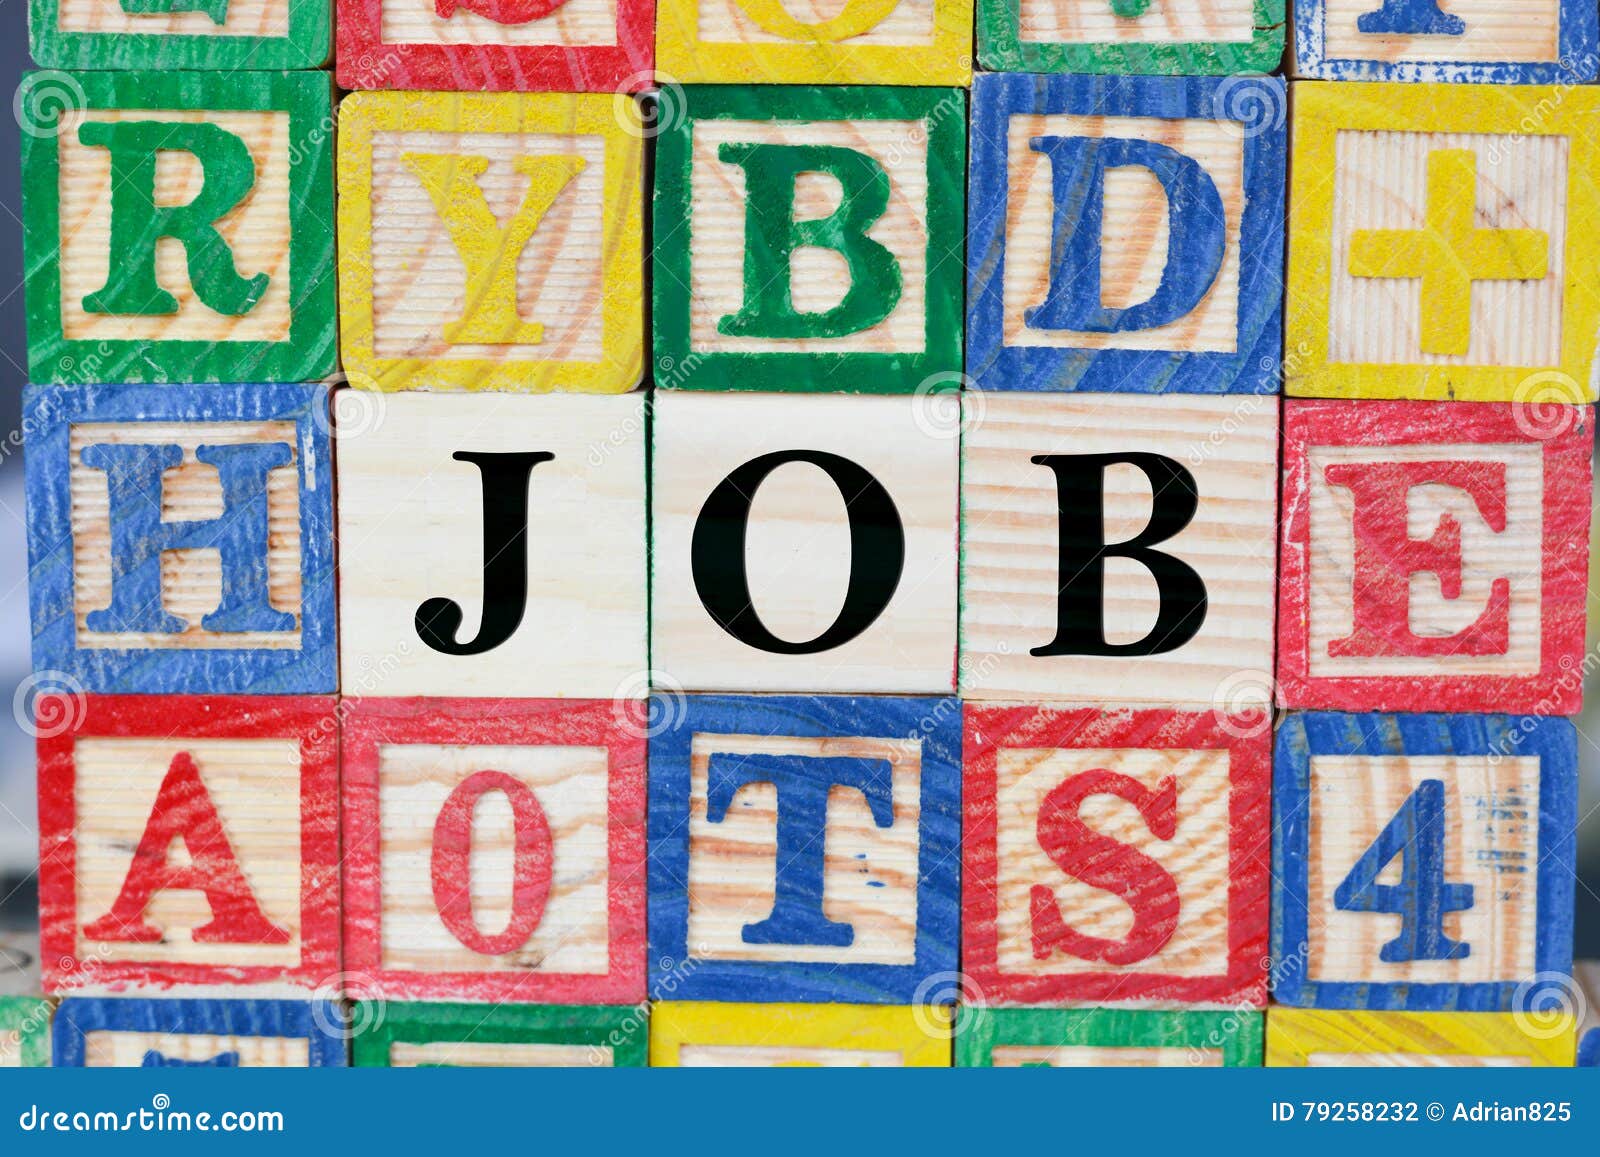 9 letter jobs block puzzle